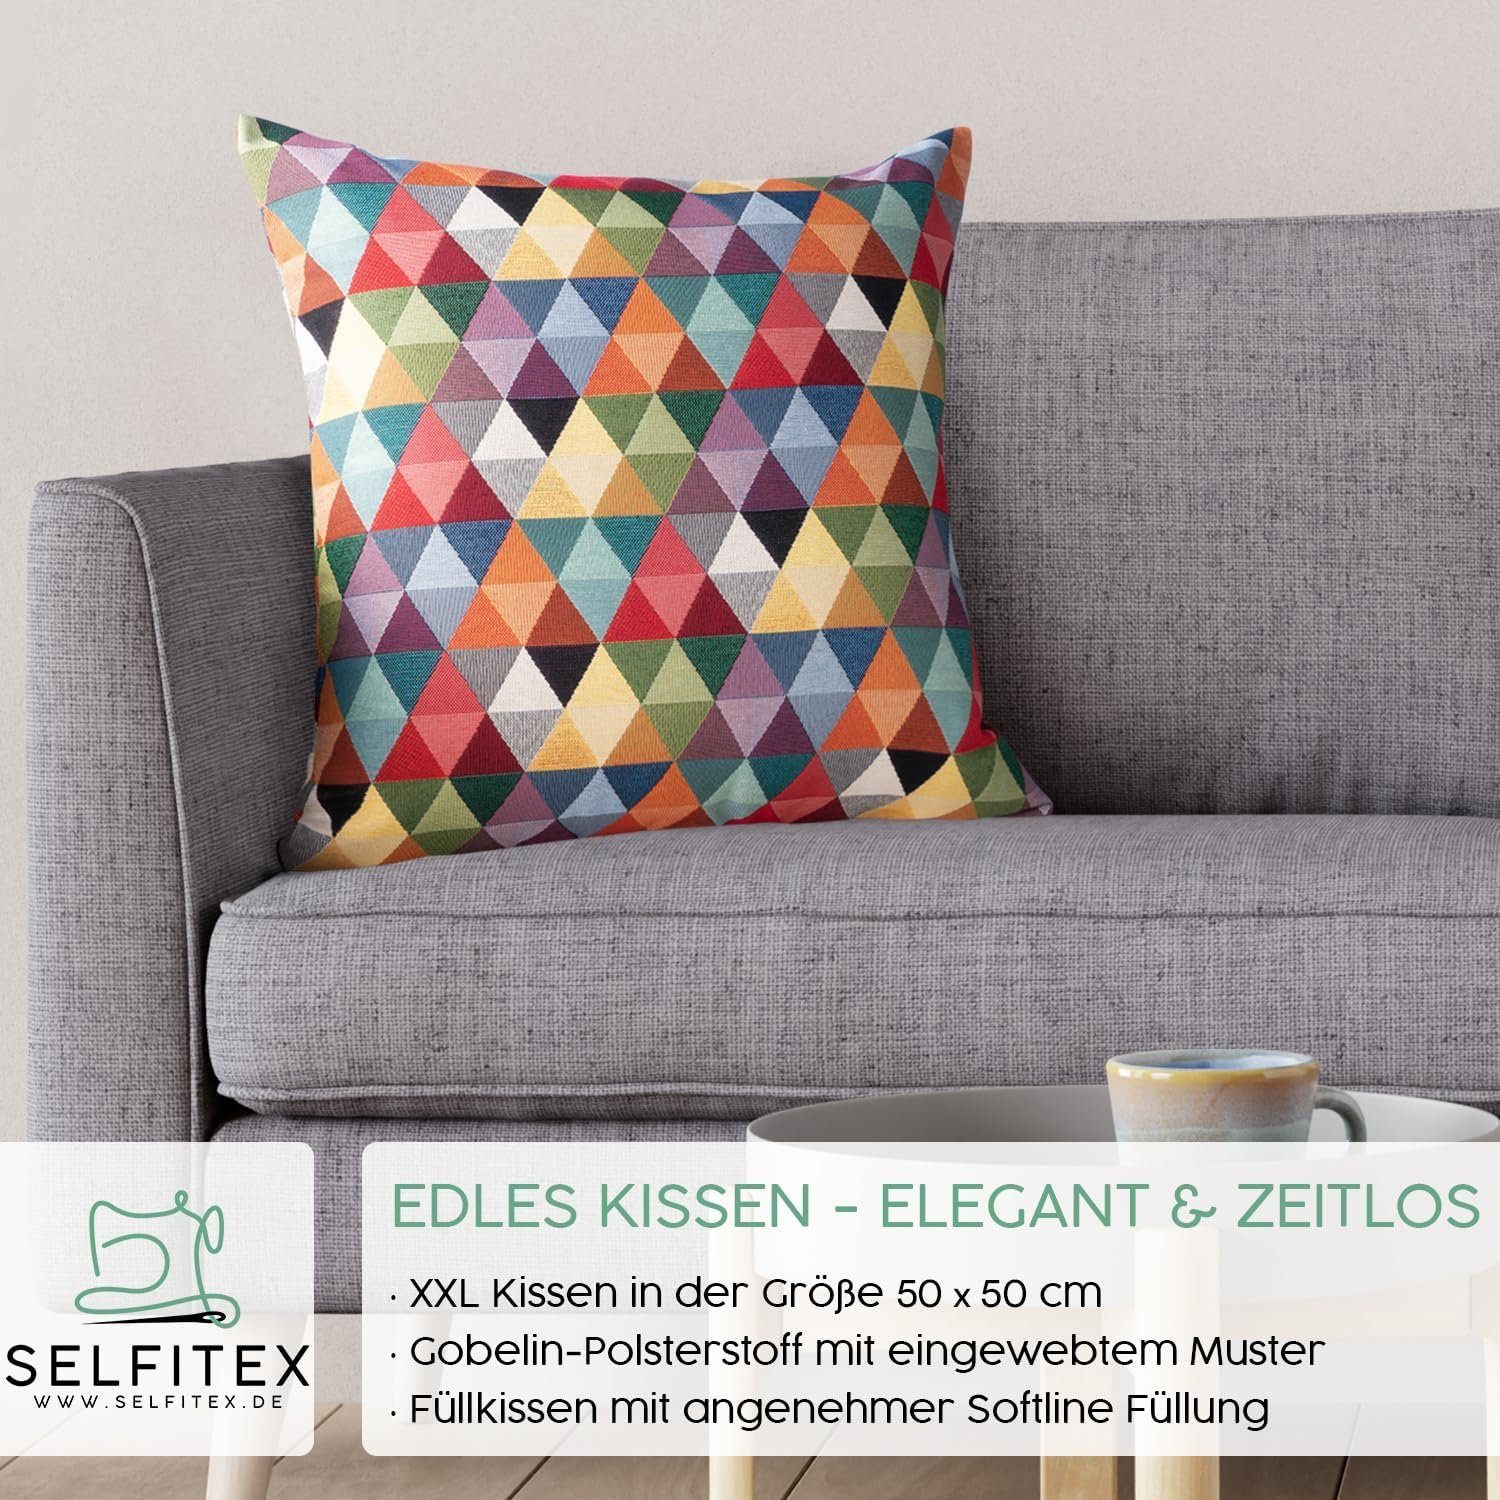 Selfitex Dekokissen farbenfrohes Sofakissen 50/50 cm - incl. Füllkissen für Sofa, Couch, aus hochertingen Gobelinstoff